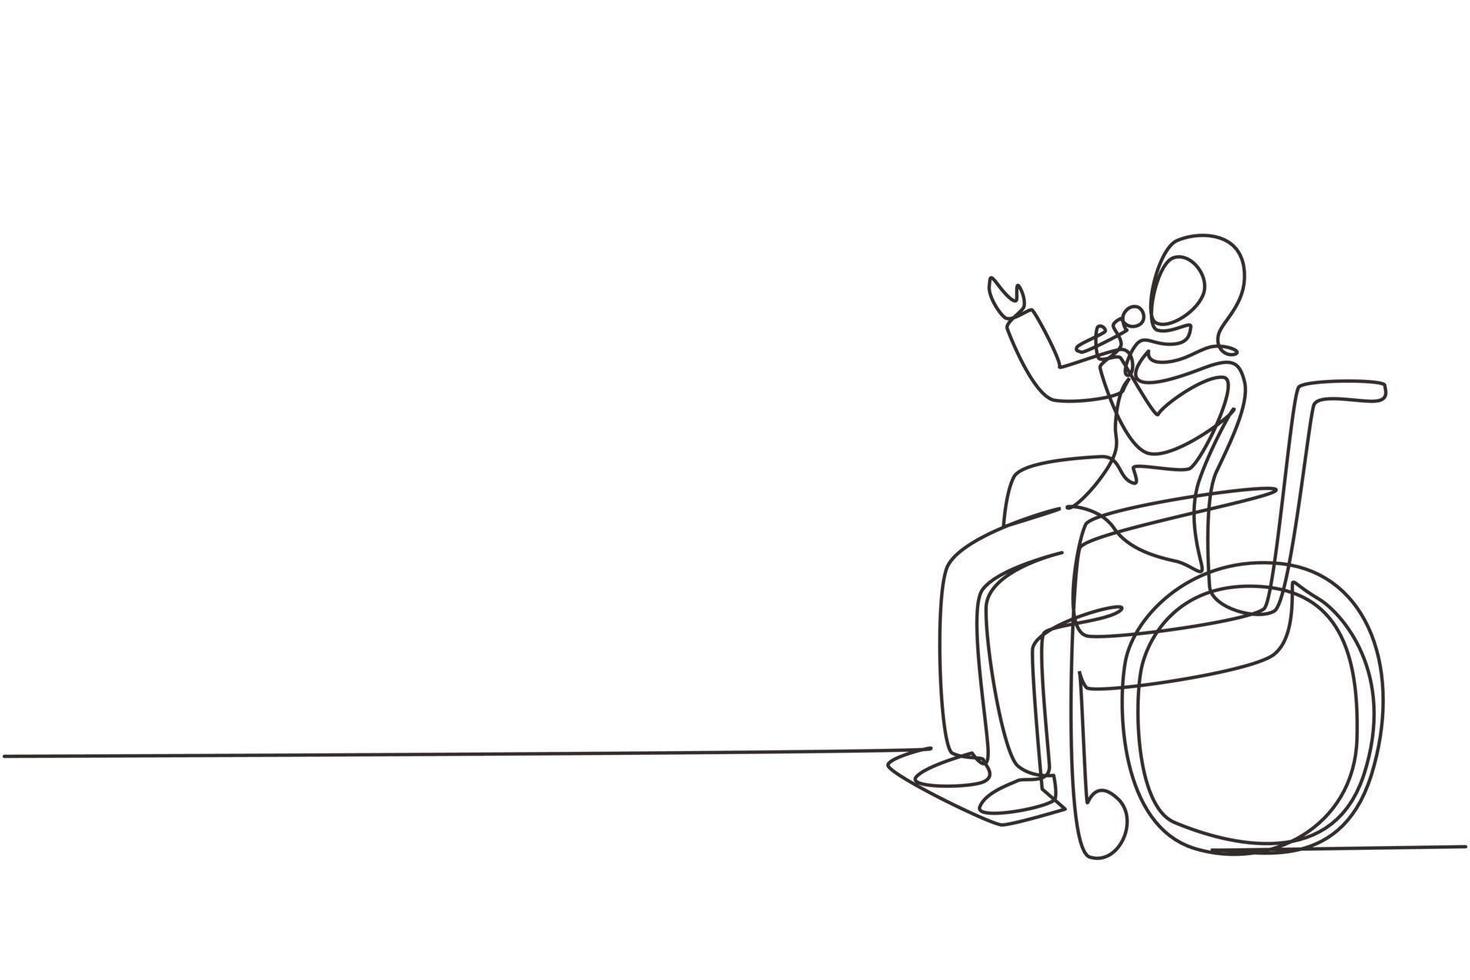 enda kontinuerlig linjeteckning funktionshindrad person som njuter av livet. arabisk kvinna sitter i rullstol sjunger på karaoke. spendera tid på rekreationsställen. en rad rita grafisk design vektorillustration vektor